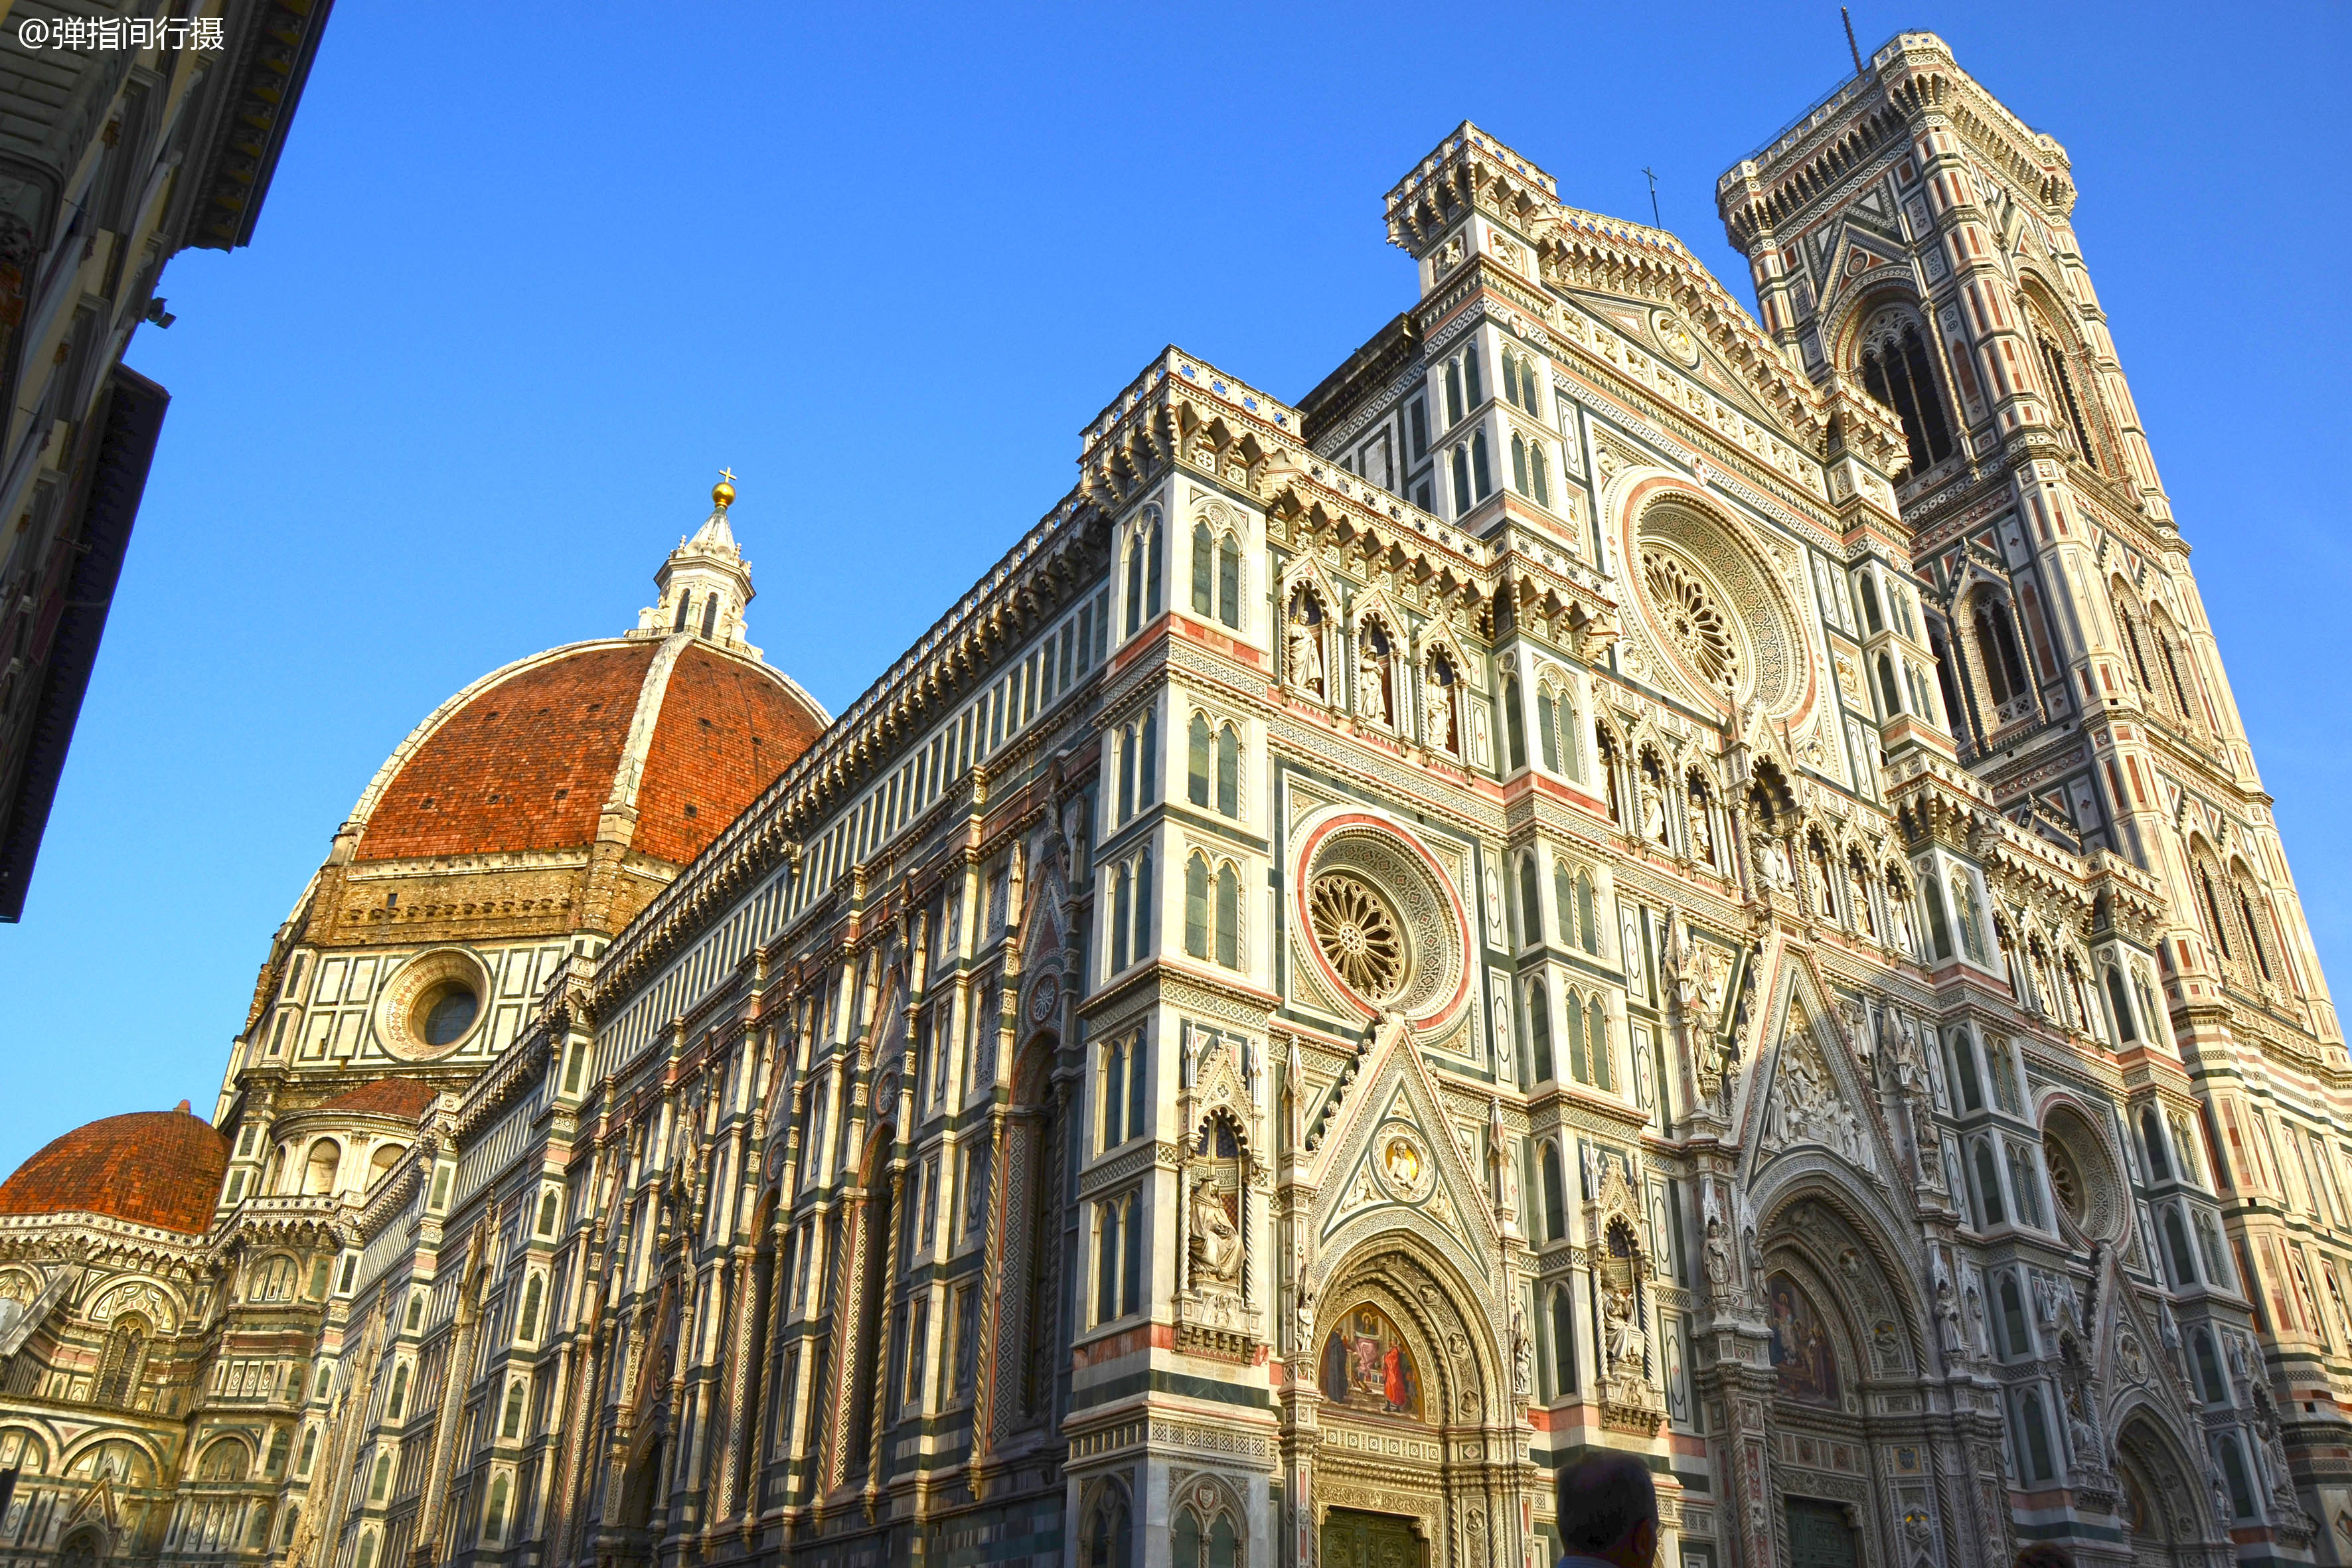 意大利最浪漫古城,藏着世界最美教堂,建筑艺术成就超巴黎圣母院